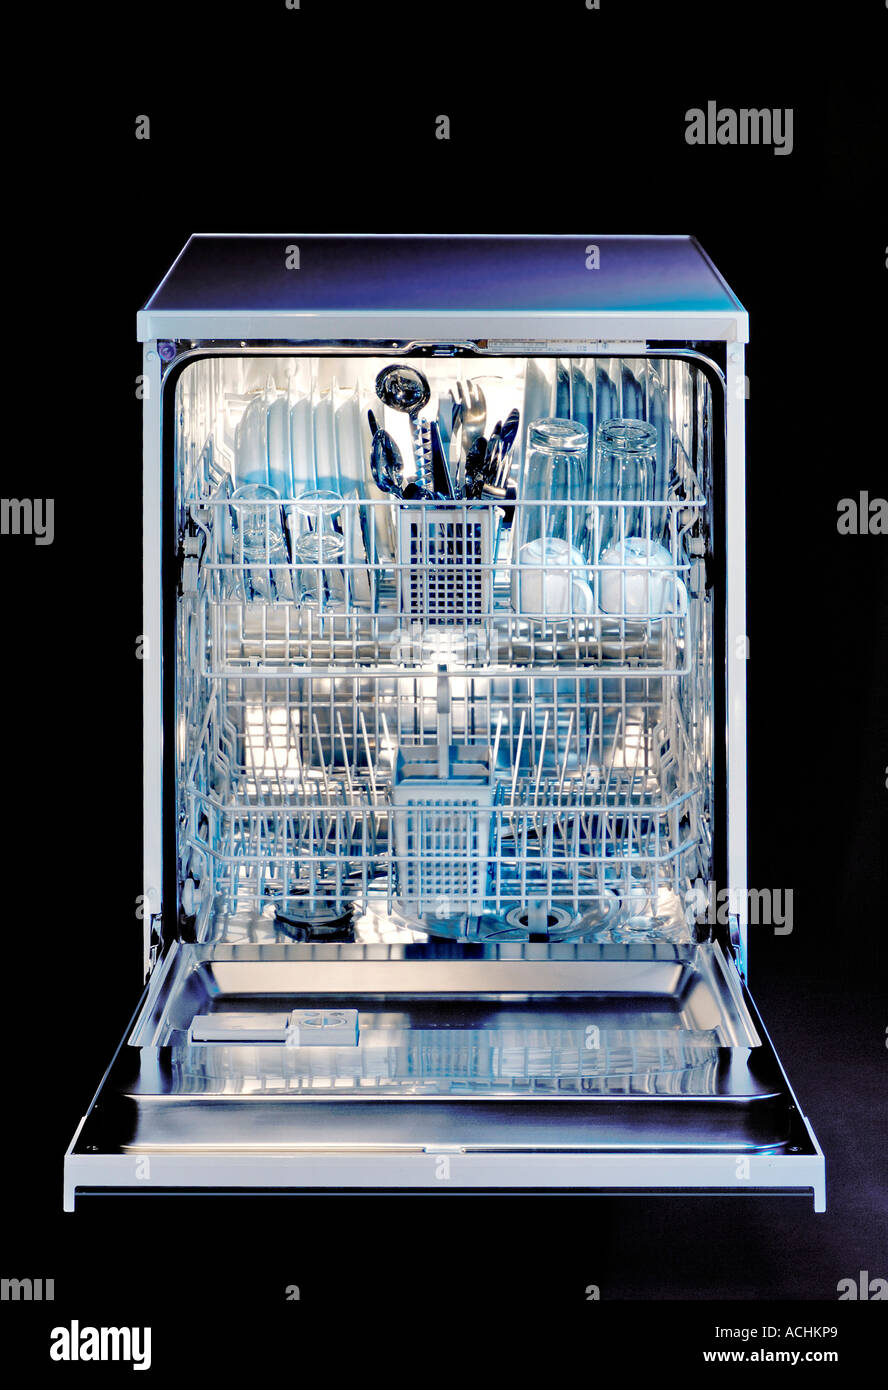 Loaden automatic Dishwasher Stock Photo